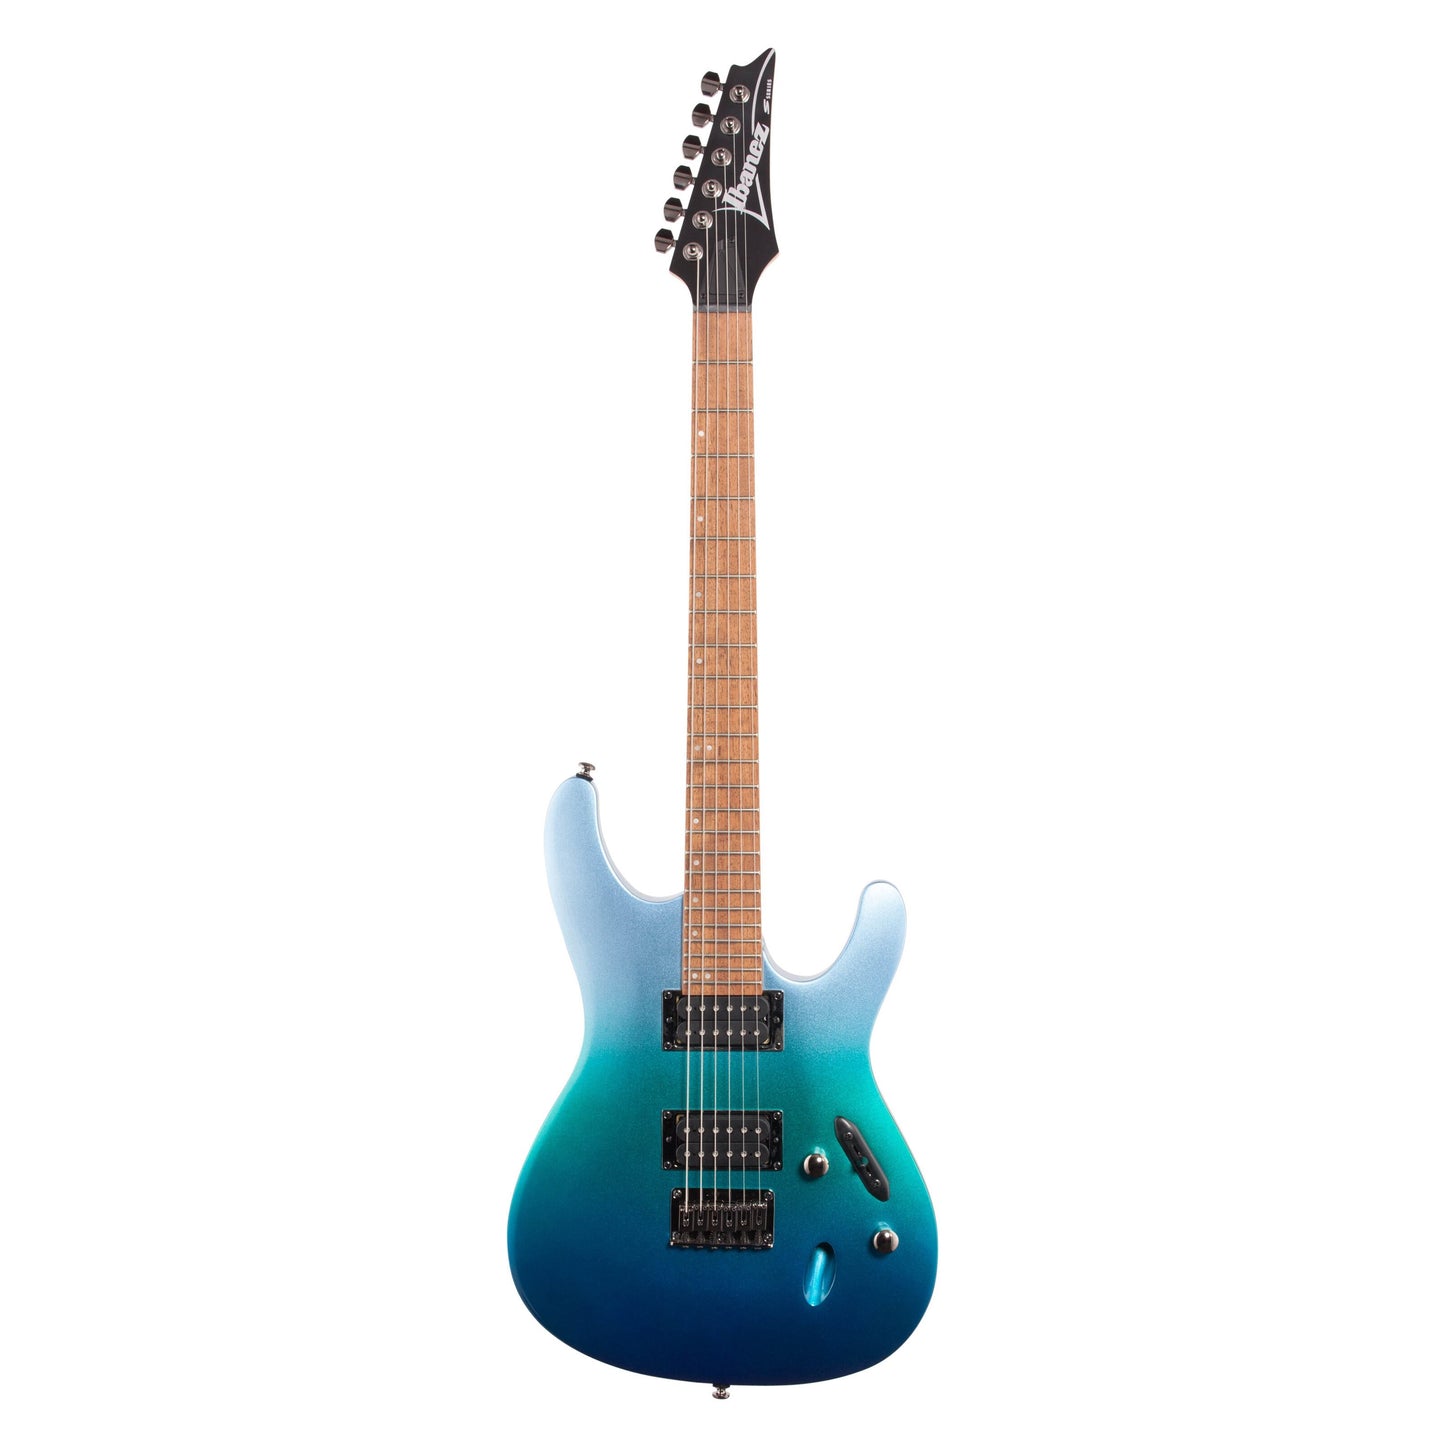 Ibanez S521 Electric Guitar, Ocean Fade Metallic